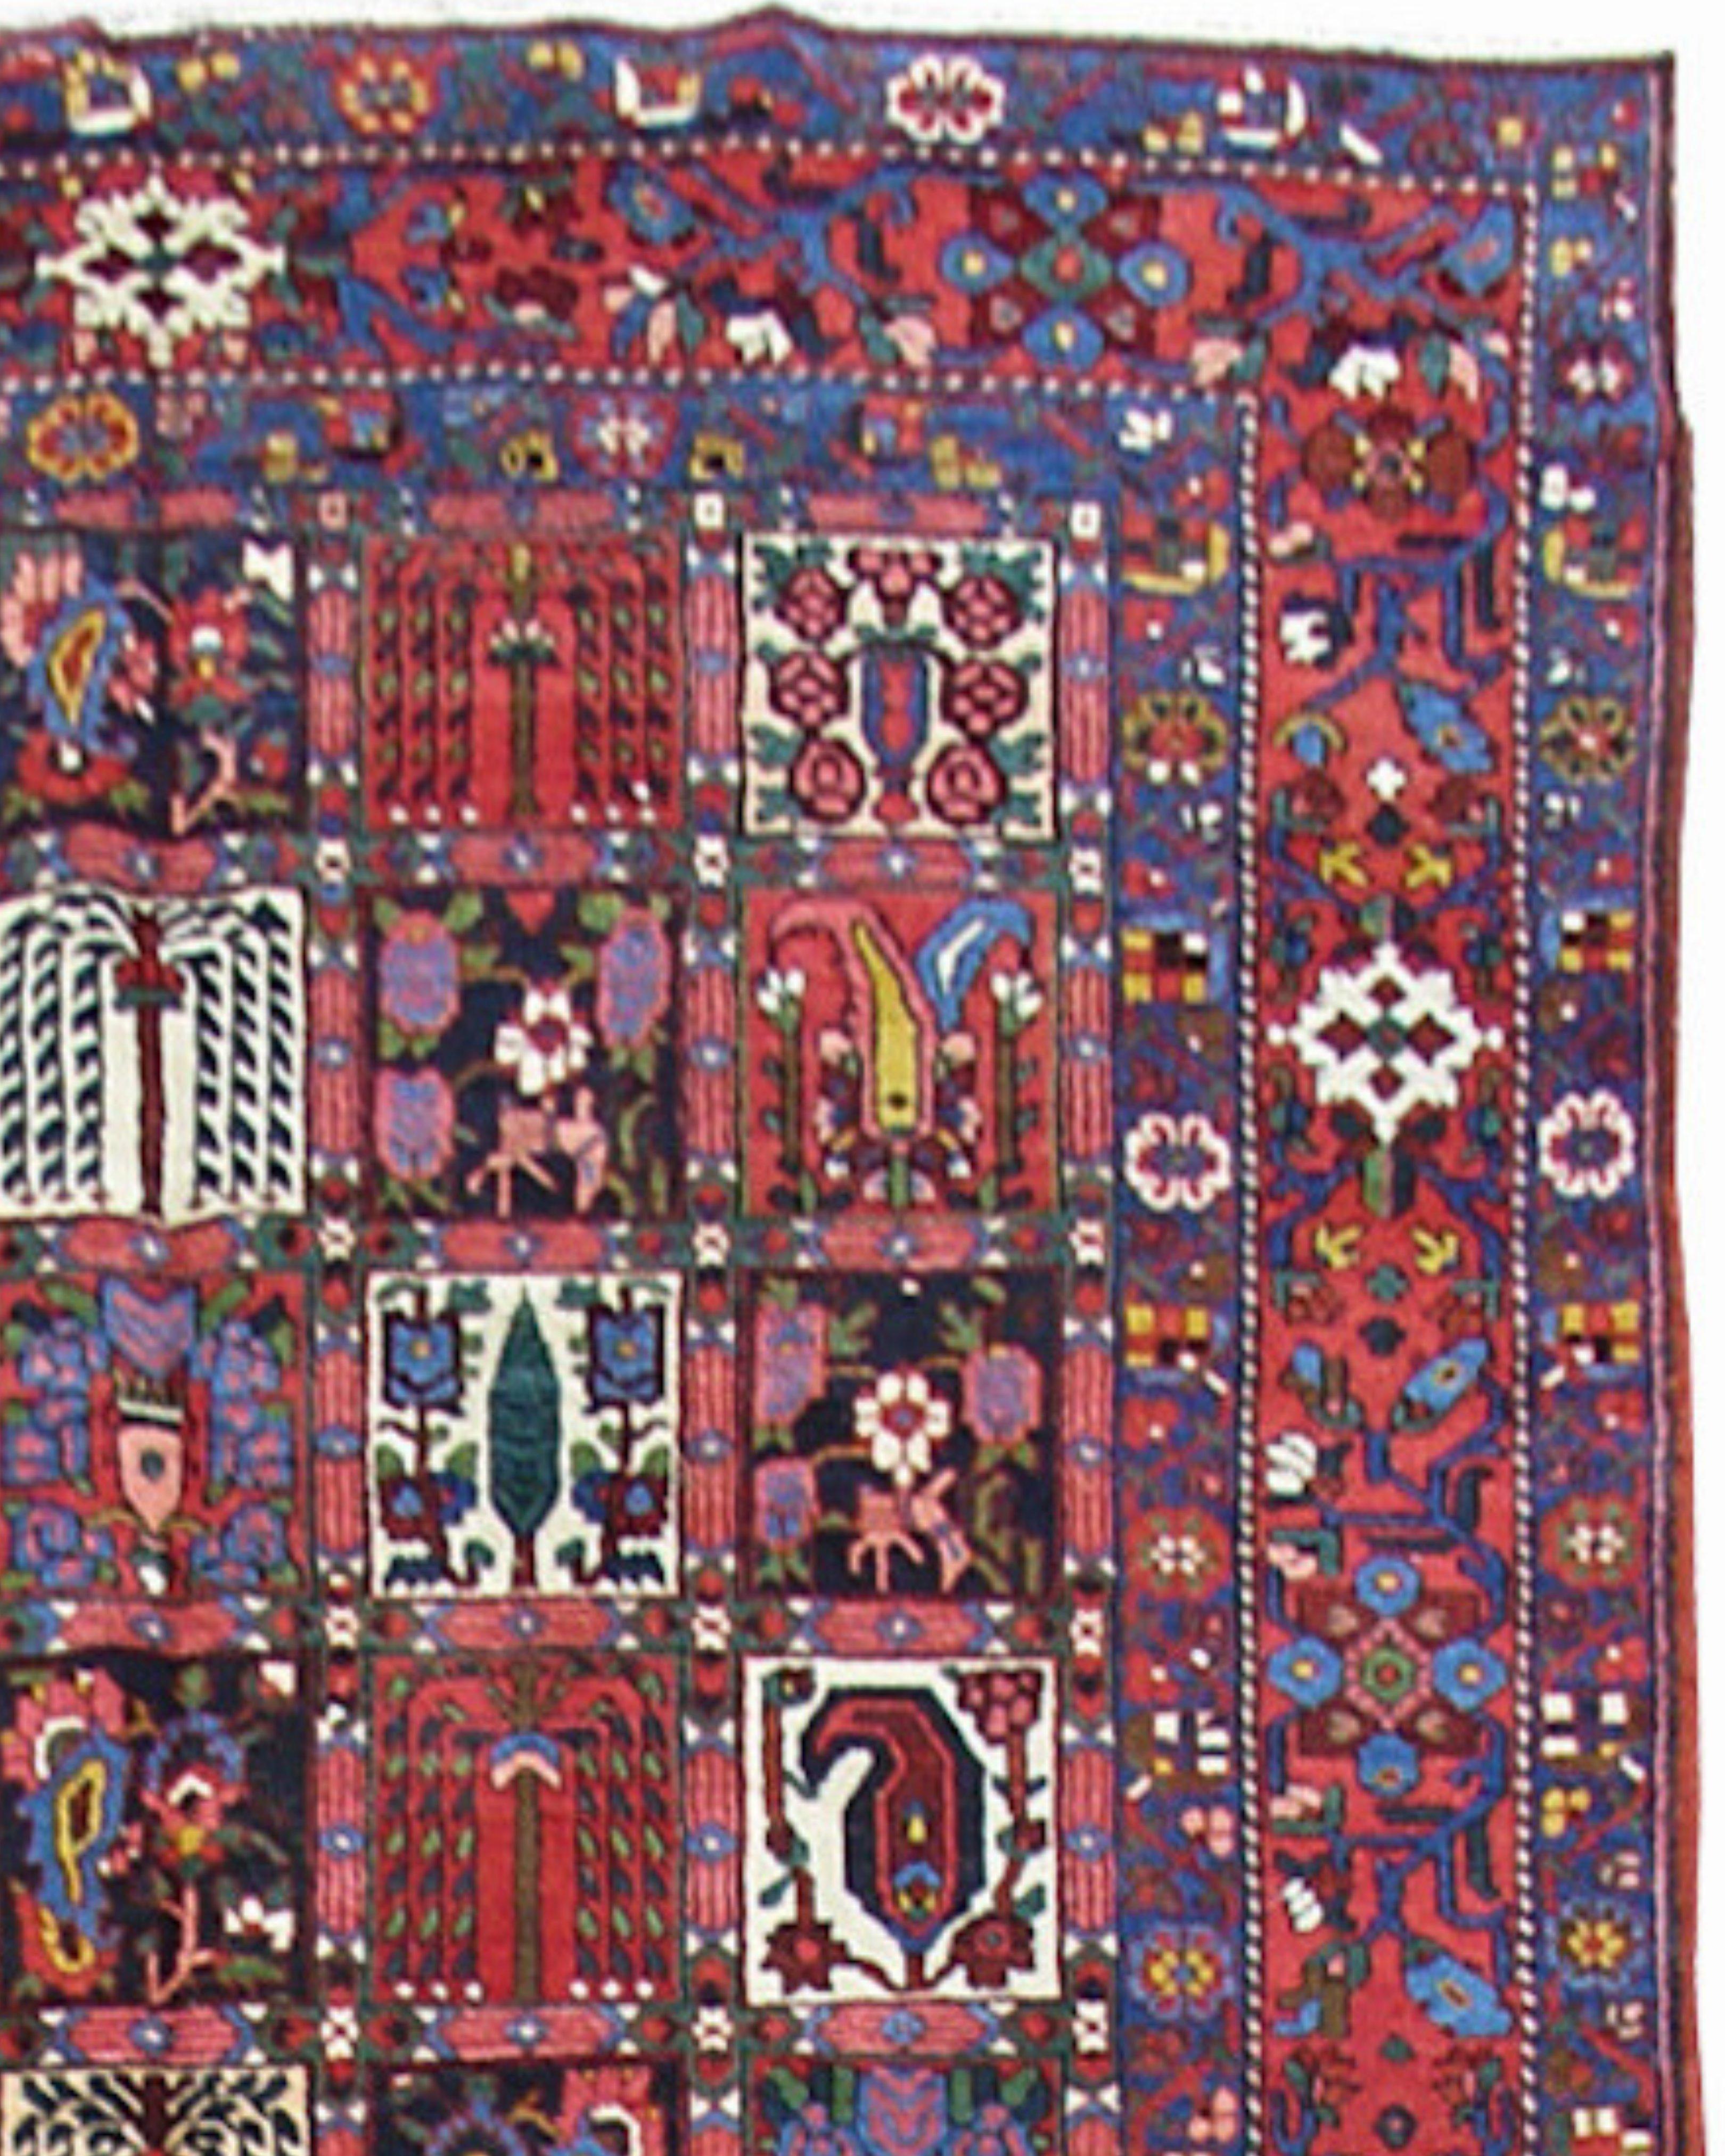 Antiker persischer Bakhtiari-Teppich, frühes 20. Jahrhundert

Zusätzliche Informationen:
Abmessungen: 7'6